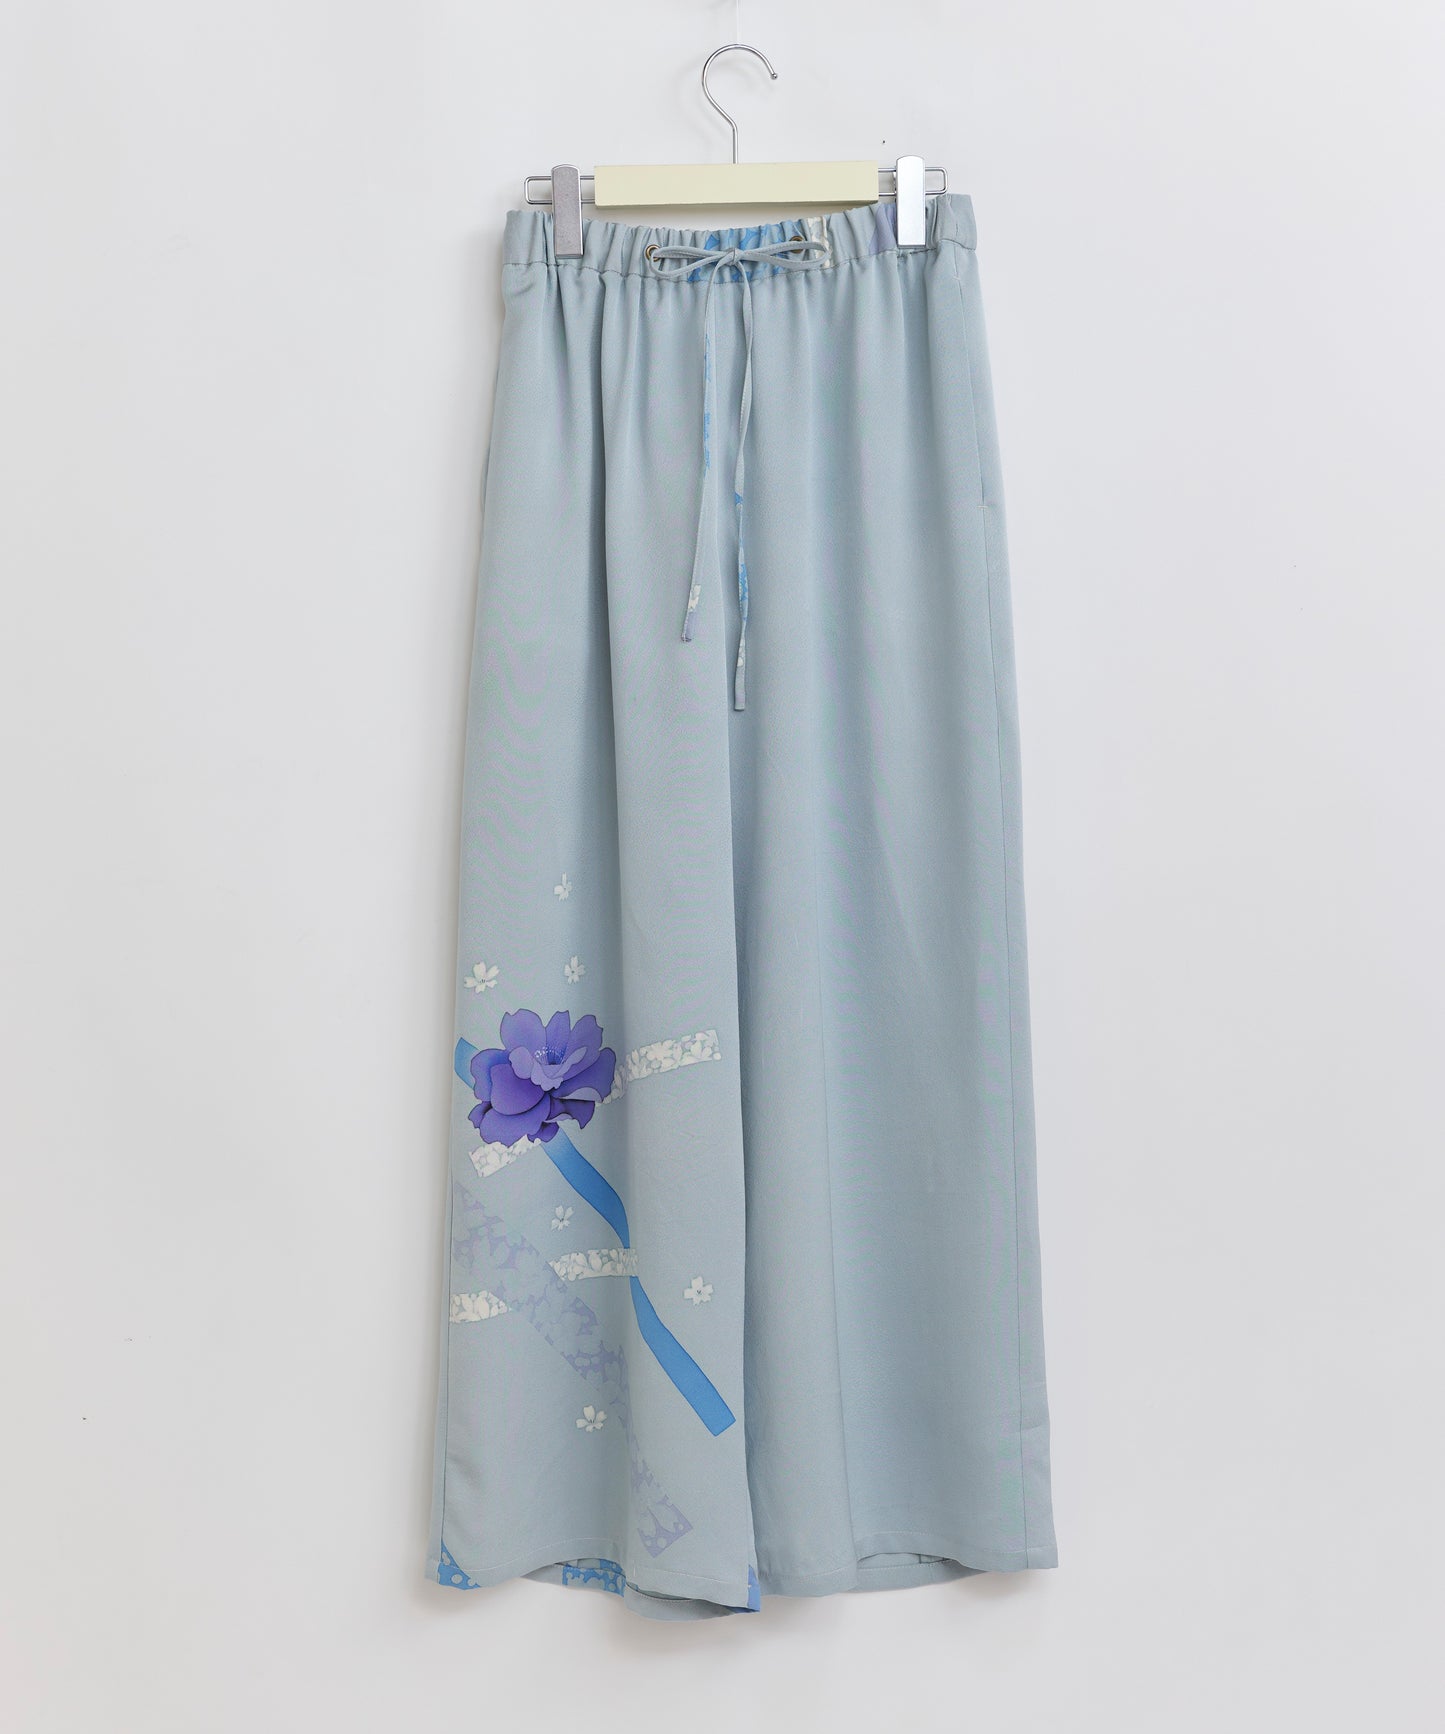 【8/19販売開始】Relax KIMONO wide pants リラックスキモノワイドパンツ TUPT1H010